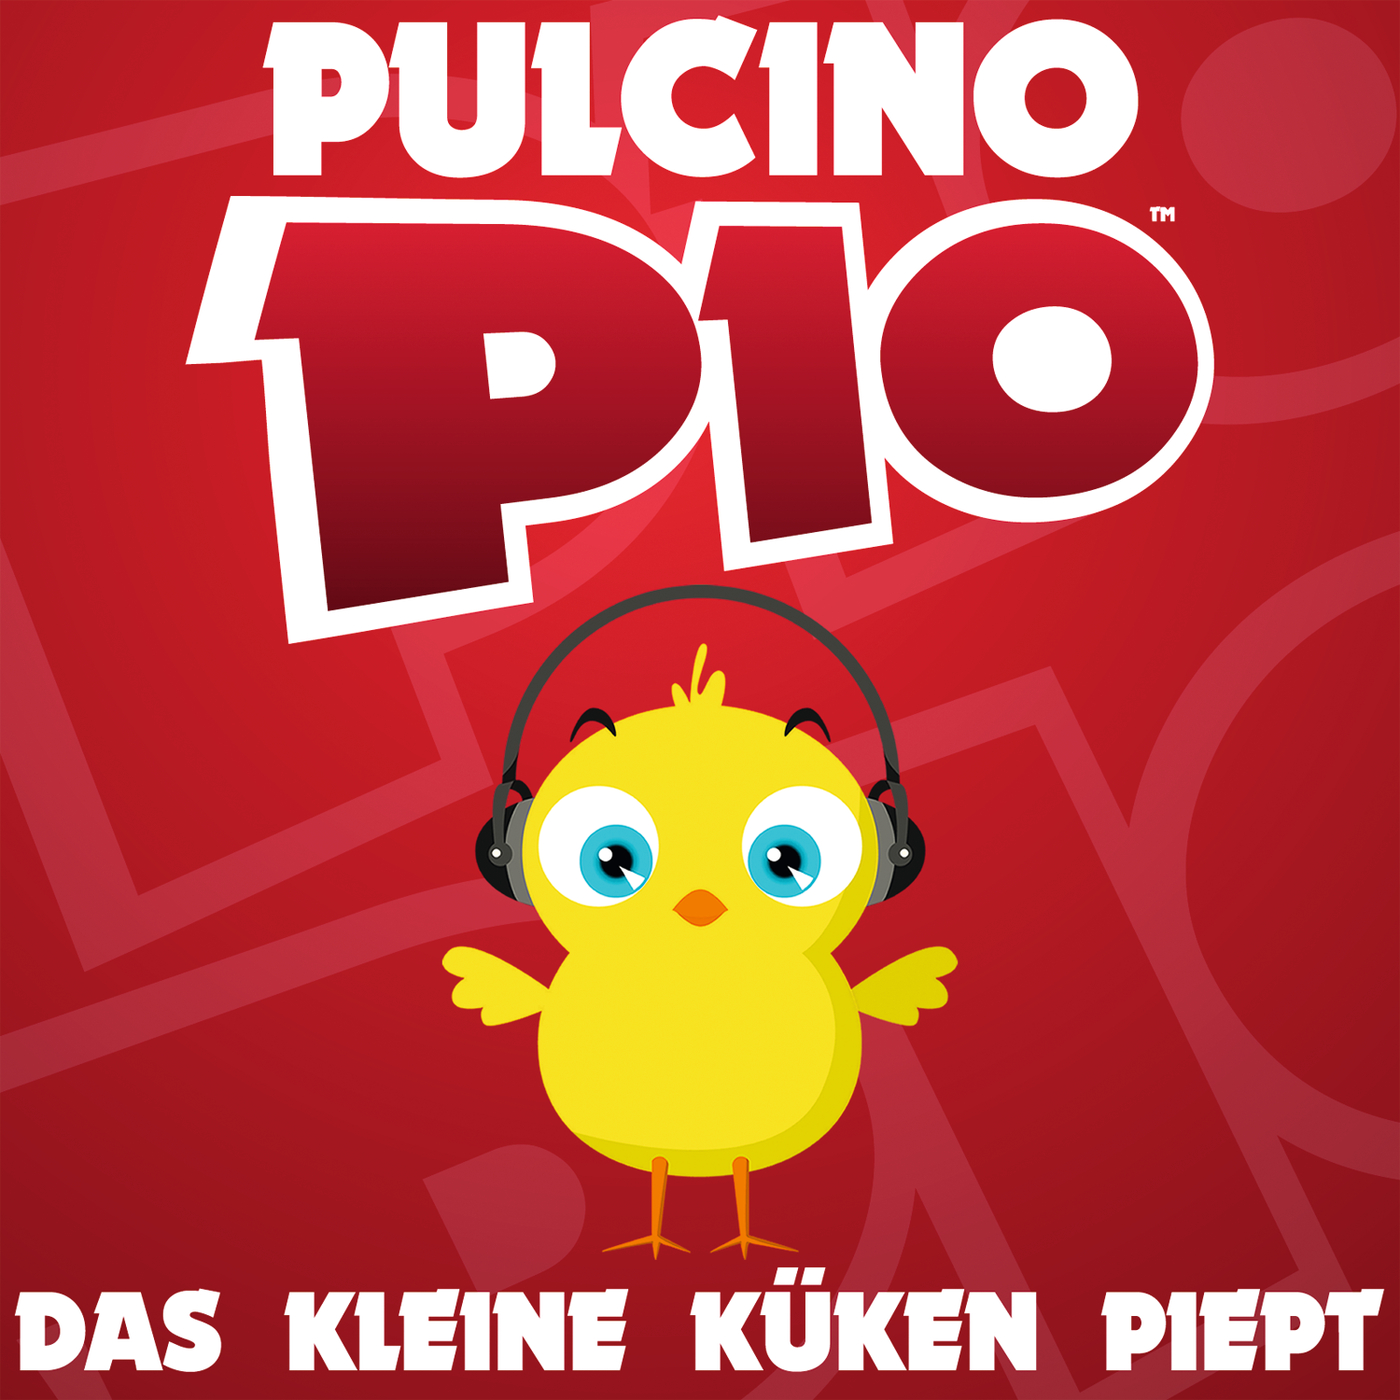 Pulcino pio - El Pollito Pio рисунок